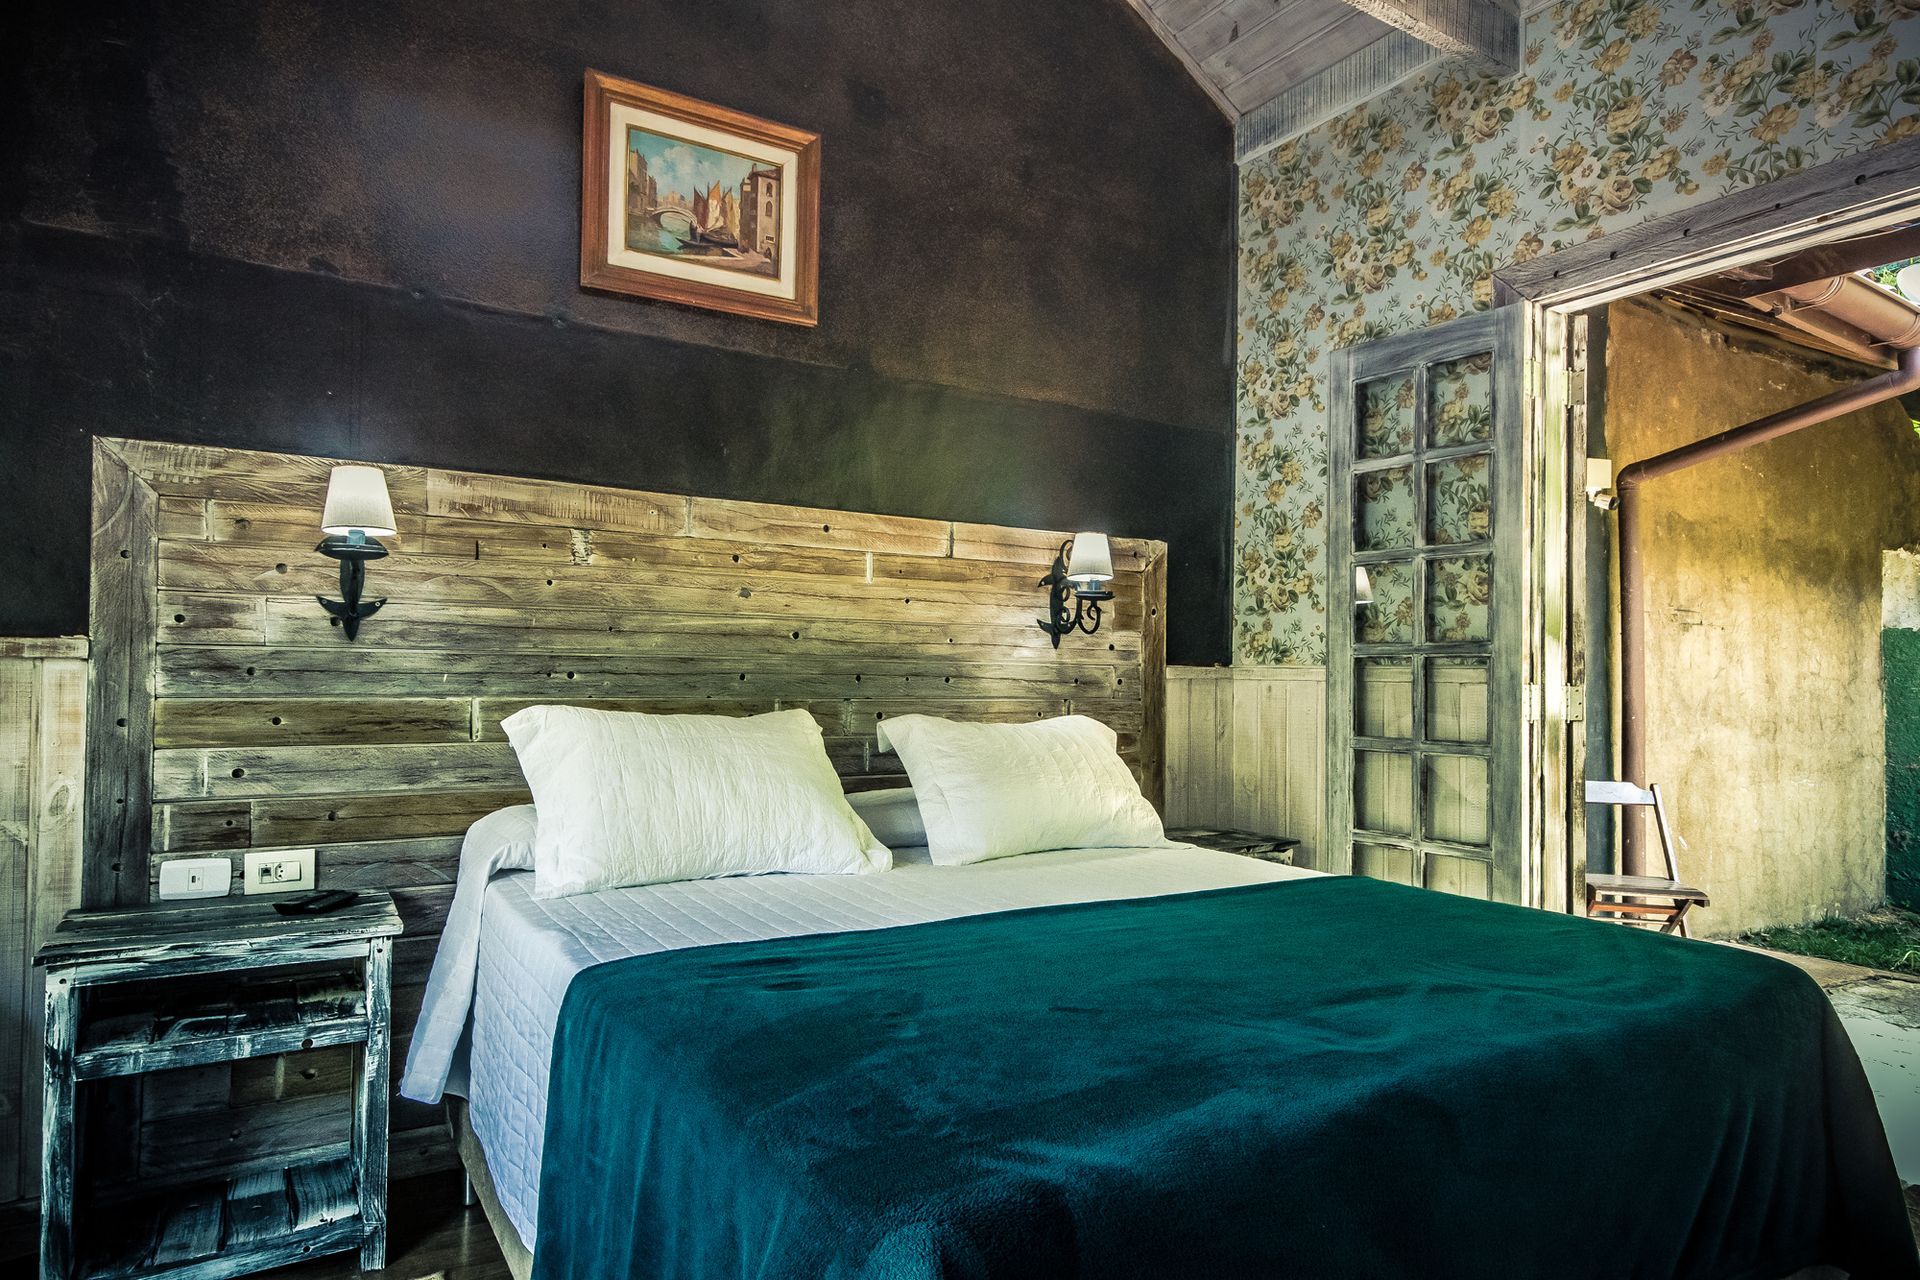 Um quarto com cama, mesa de cabeceira e um quadro na parede.